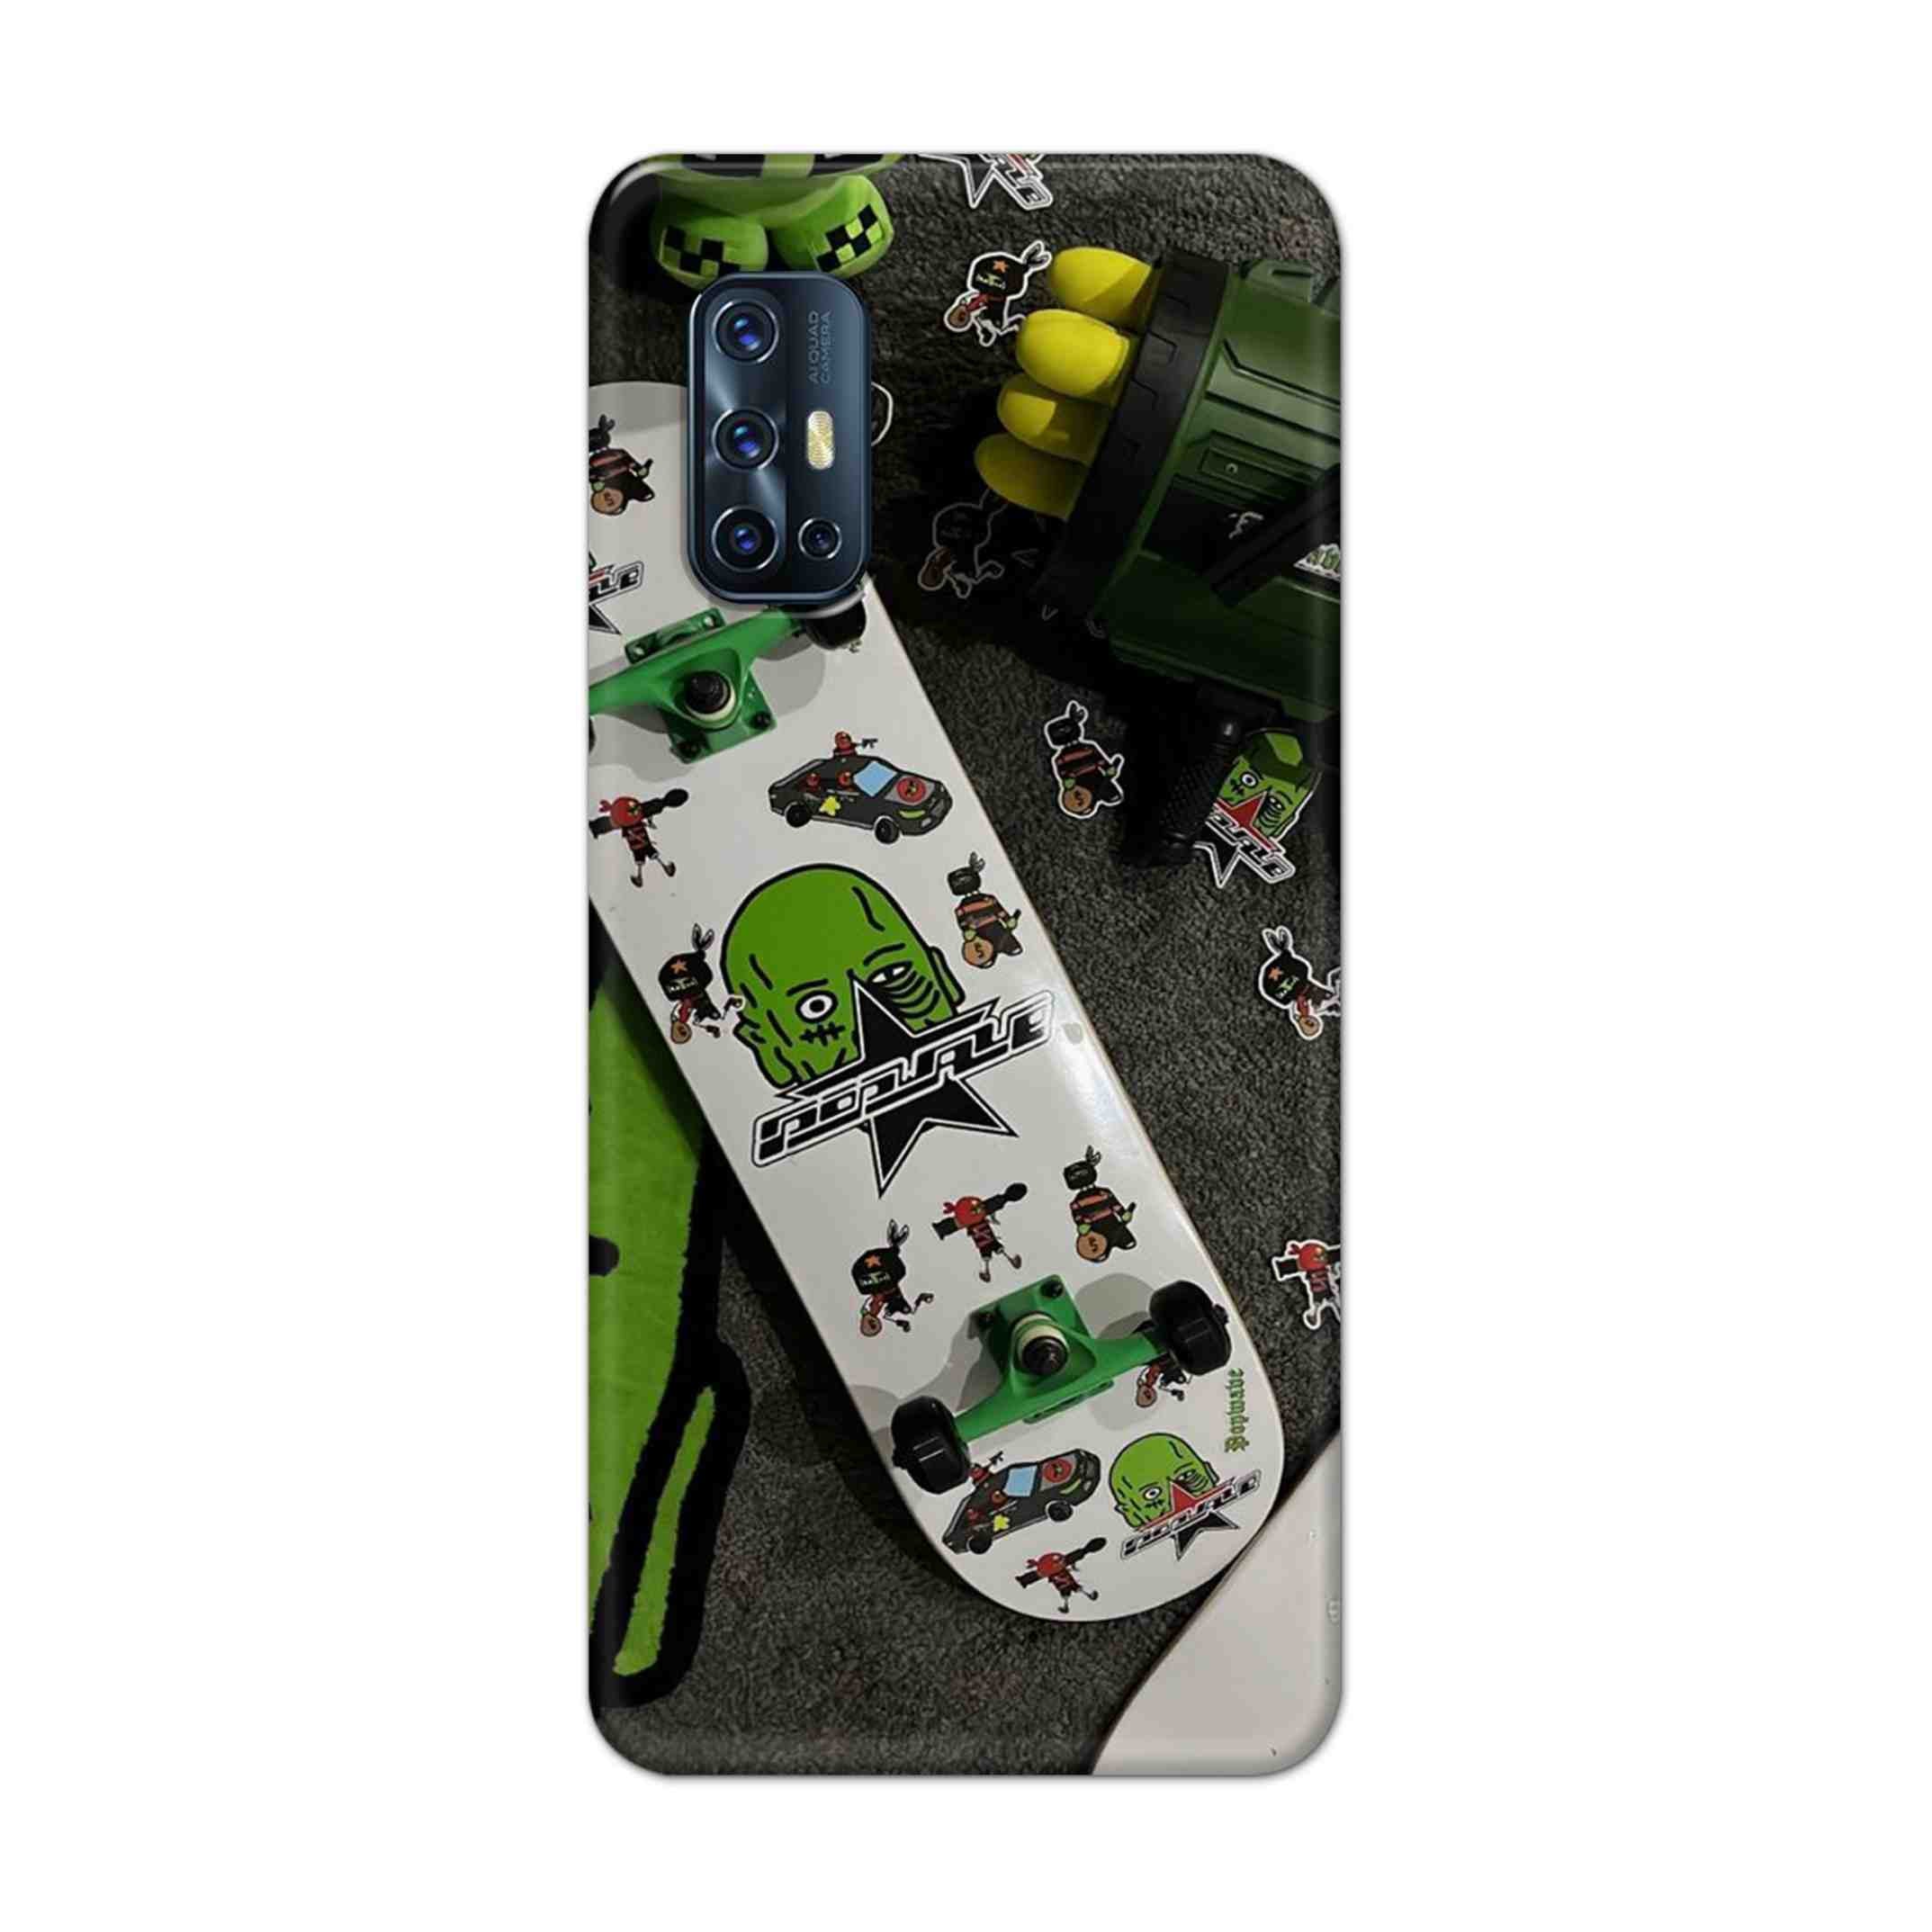 Buy Hulk Skateboard Hard Back Mobile Phone Case Cover For Vivo V17 Online